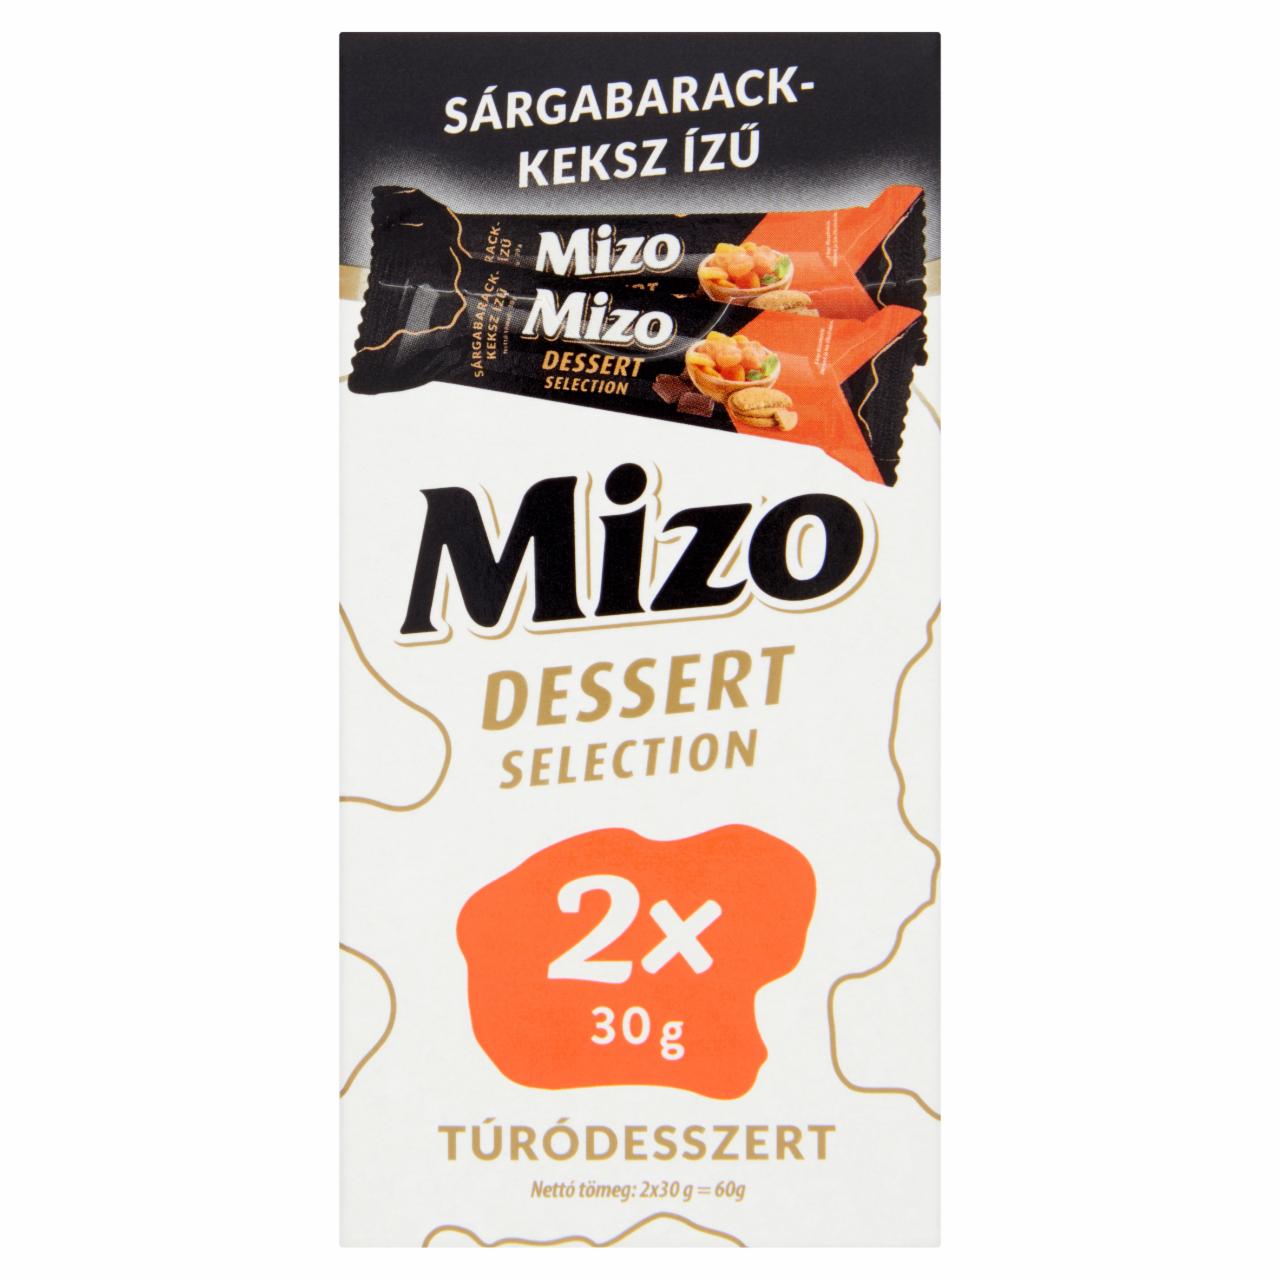 Képek - Mizo Dessert Selection sárgabarack-keksz ízű túródesszert 2 x 30 g